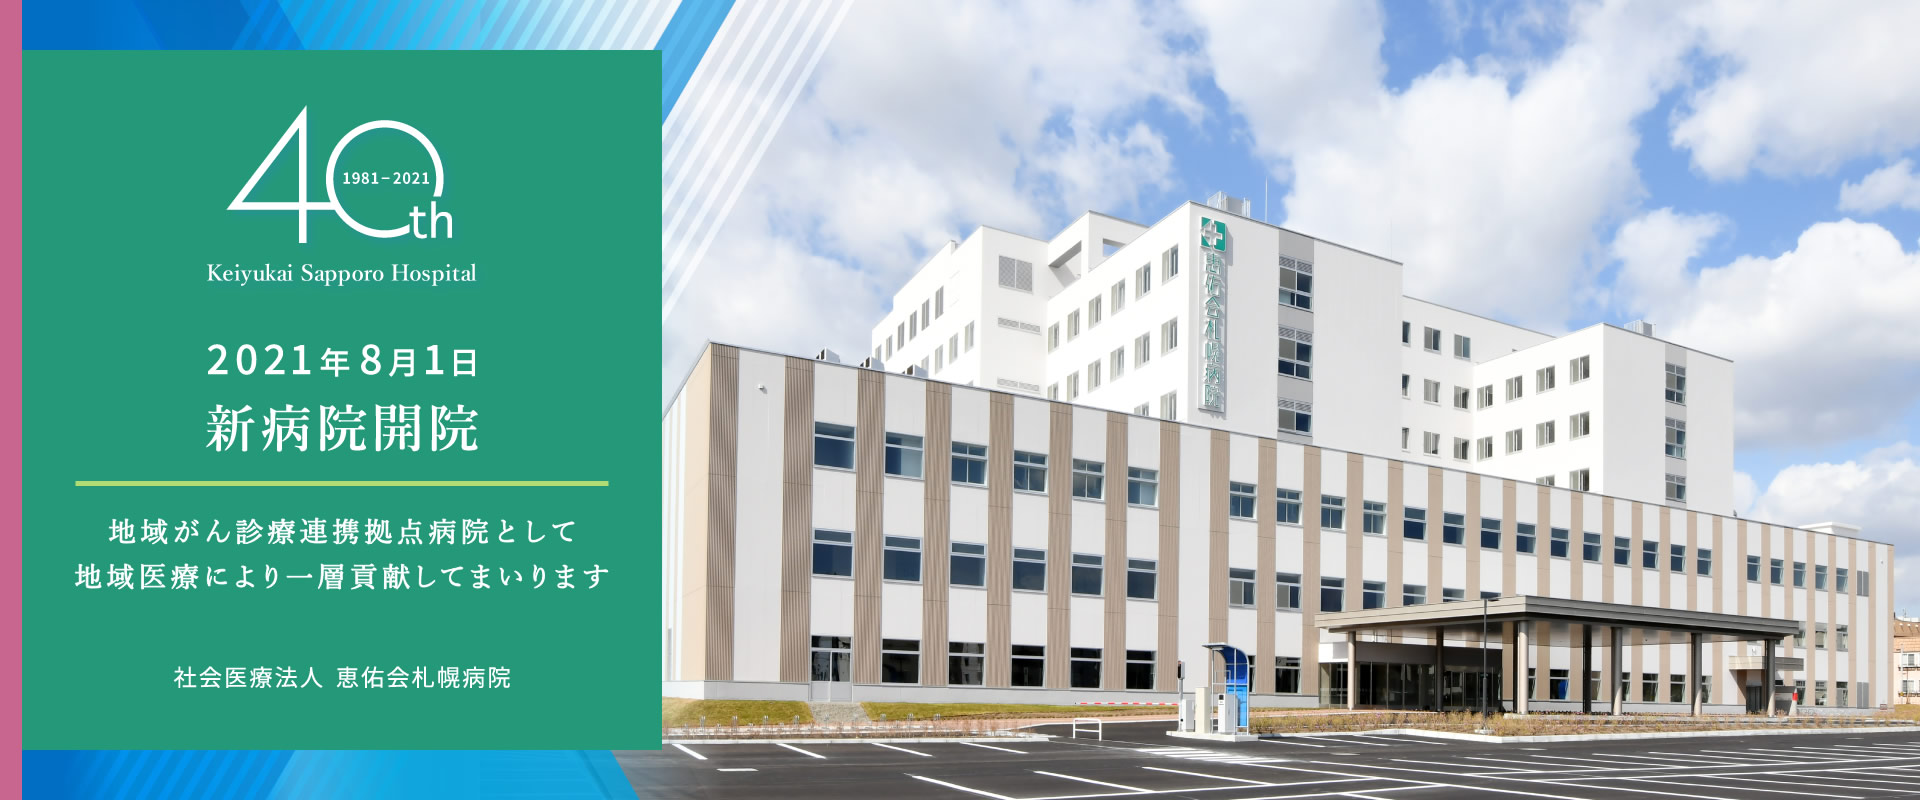 社会医療法人恵佑会札幌病院 40周年 2021年8月1日新病院開院　地域がん診療連携拠点病院として地域医療により一層貢献してまいります